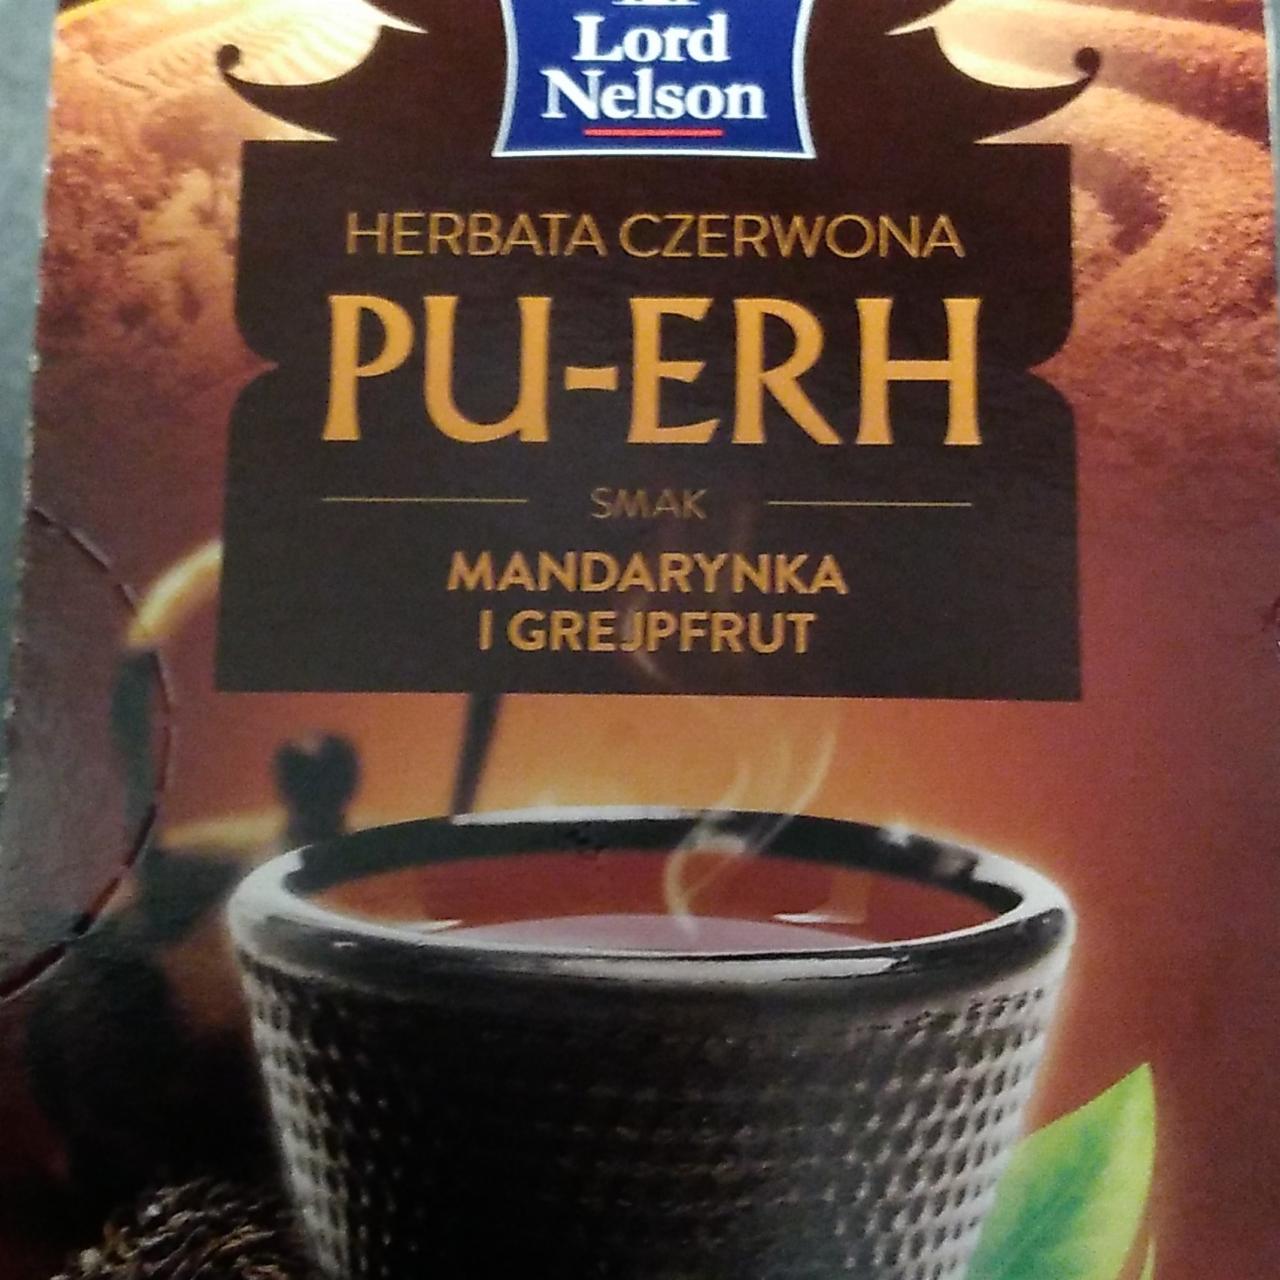 Zdjęcia - Herbata Czerwona Pu-Erh smak mandarynka i grejpfrut Lord Nelson